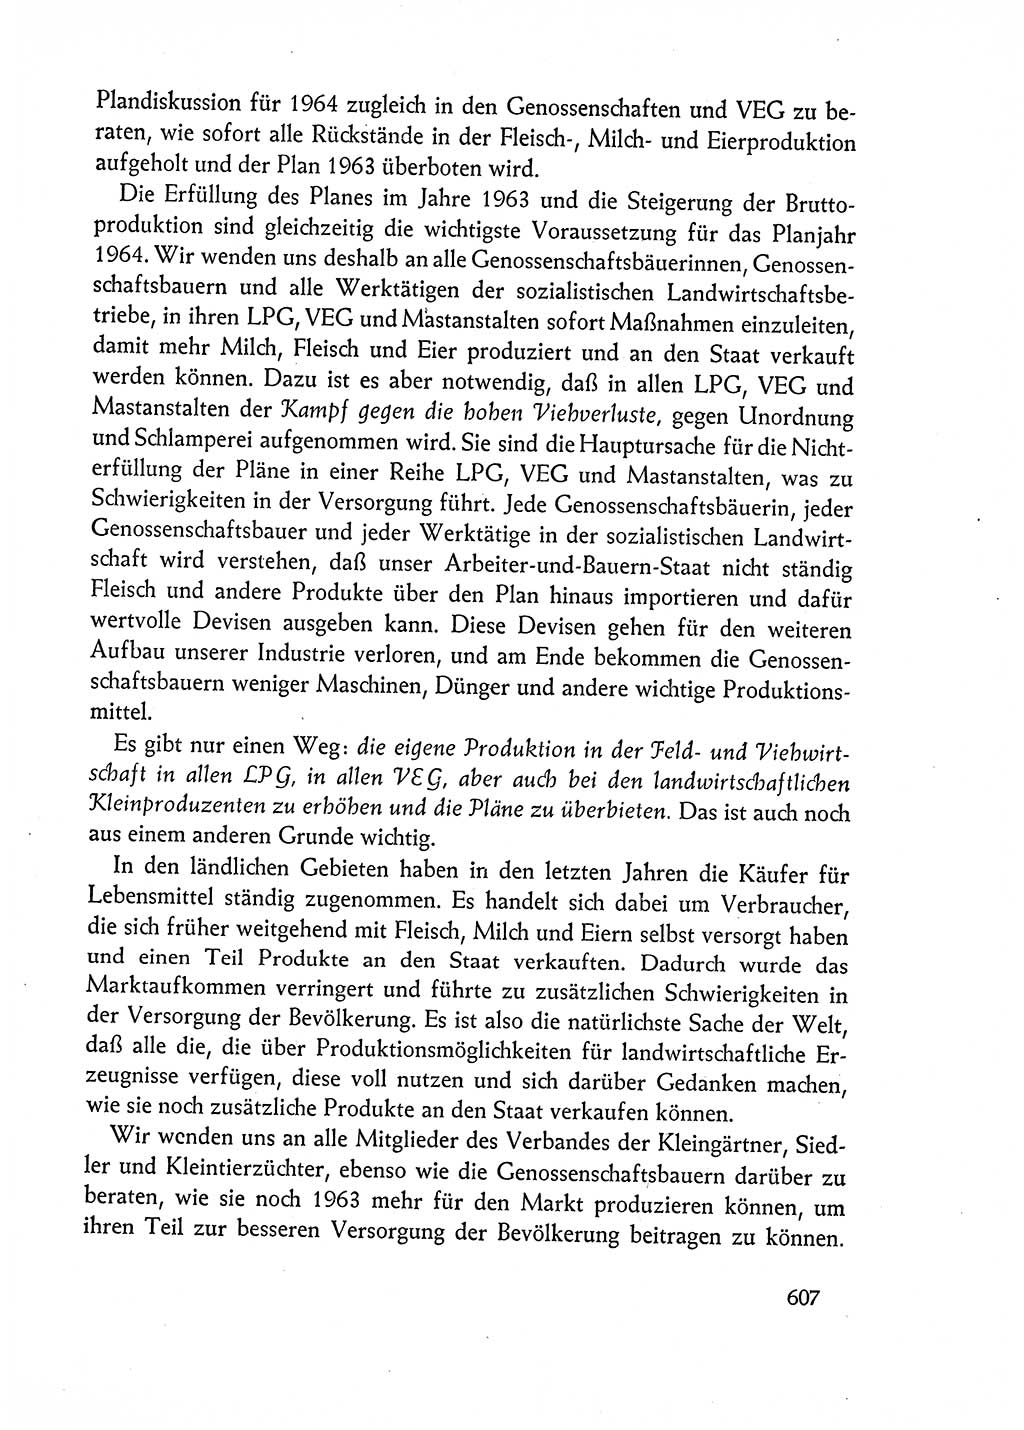 Dokumente der Sozialistischen Einheitspartei Deutschlands (SED) [Deutsche Demokratische Republik (DDR)] 1962-1963, Seite 607 (Dok. SED DDR 1962-1963, S. 607)